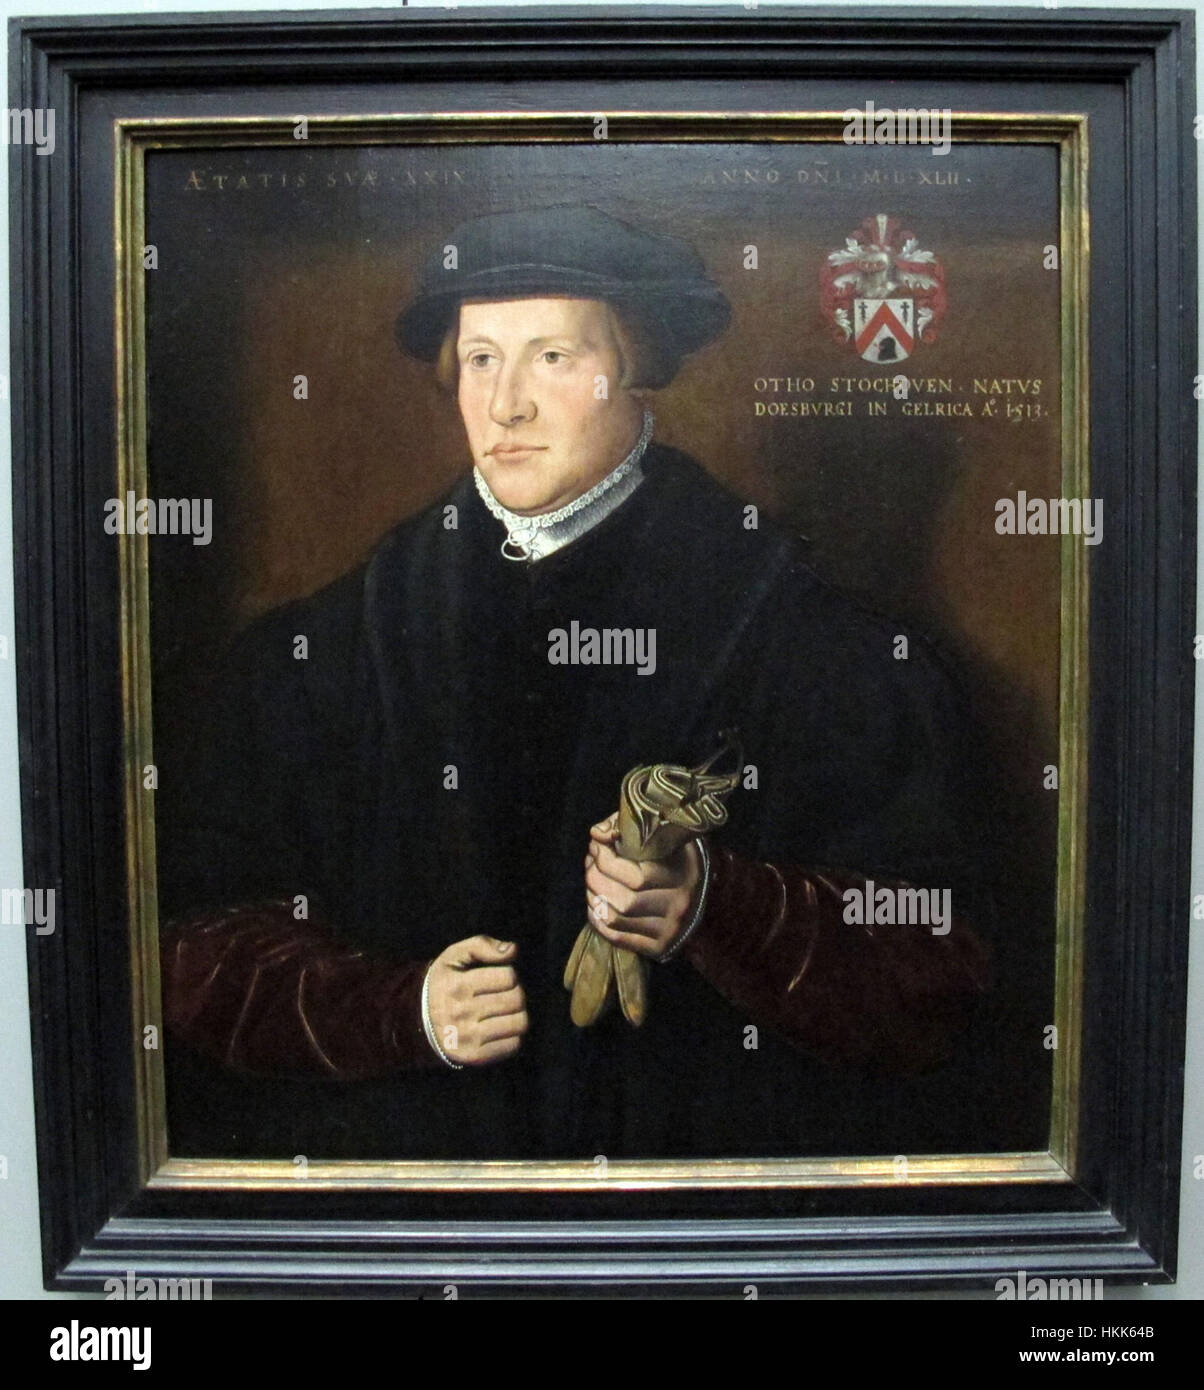 Ambrosius benson, ritratto di otho stochoven, 1542 Stock Photo